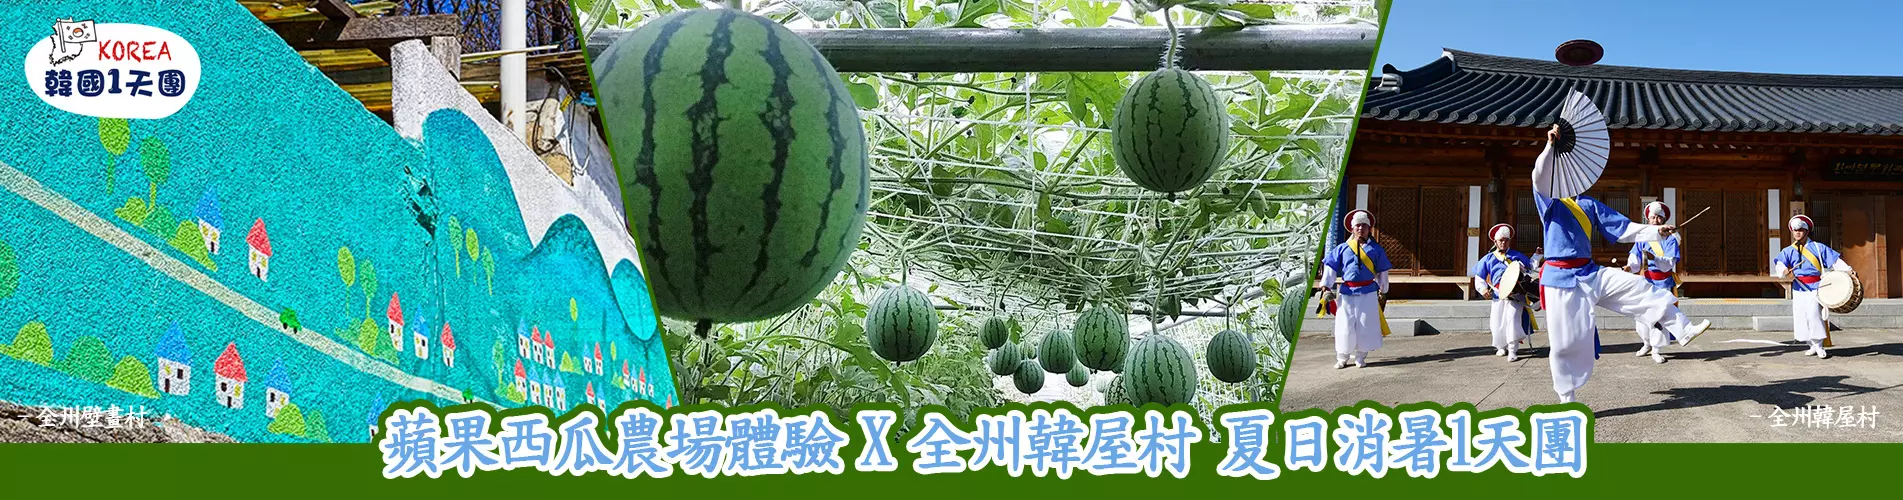 蘋果西瓜農場體驗 X 全州韓屋村 韓國夏日消暑1天團 (WM-01)